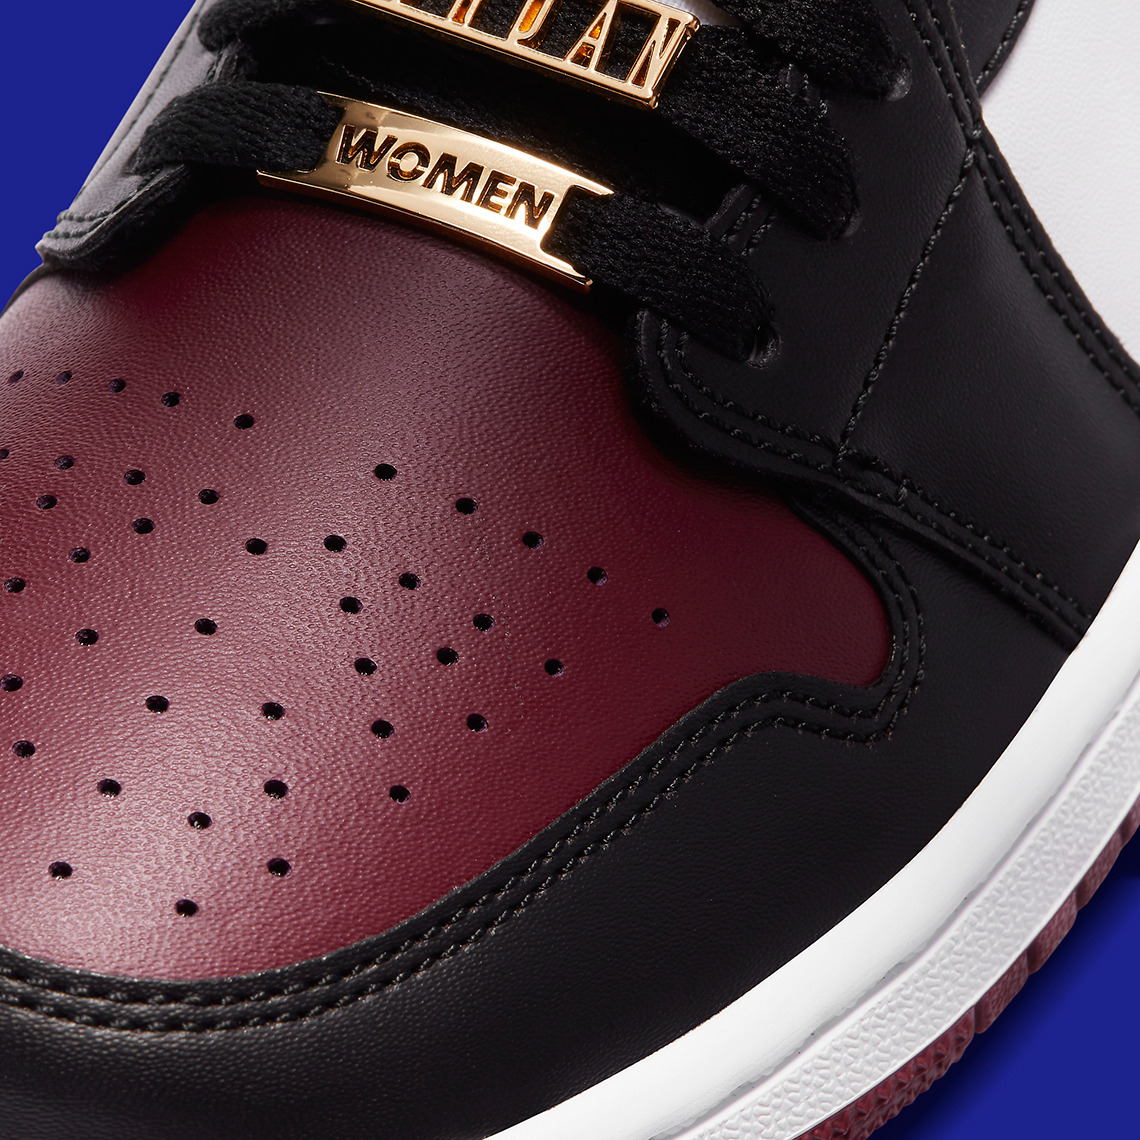 Air Jordan 1 Mid WMNS Maroon Black Gold CZ4385-016 | SneakerNews.com